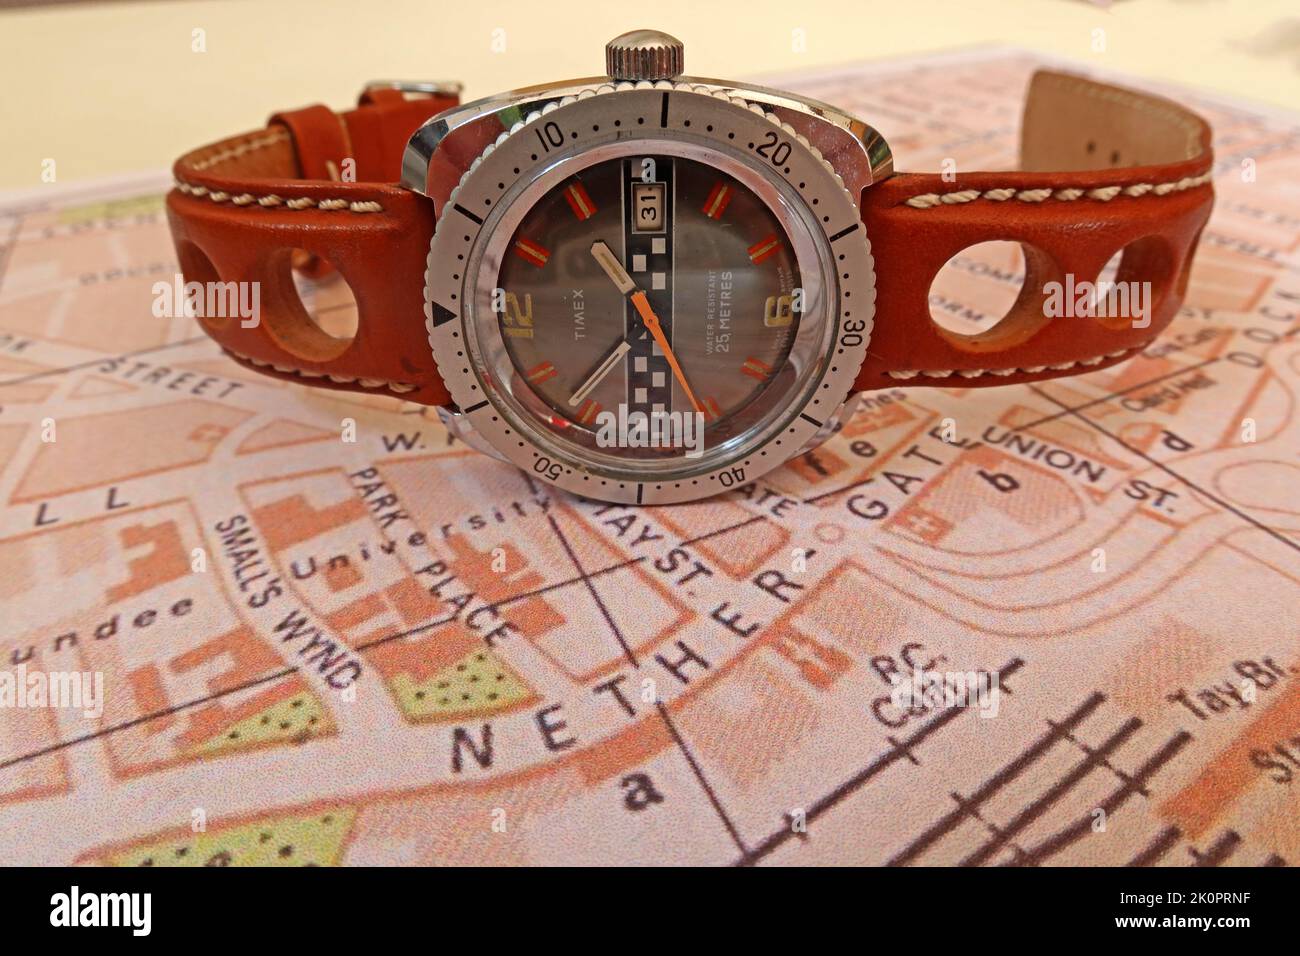 Timex Corporation Uhrenfirma, Rallye-Stil, hergestellt in 1975 Uhr, aus Timex Fabrik in Dundee, Schottland, Großbritannien Stockfoto